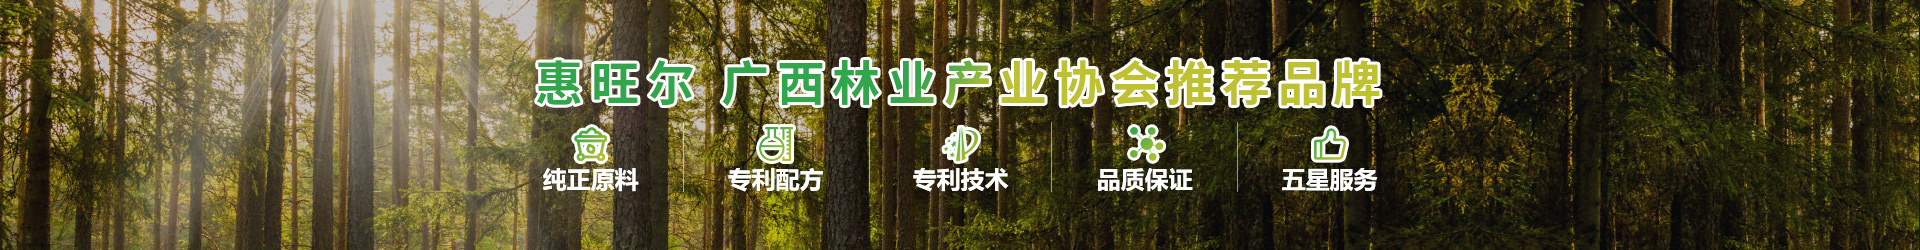 惠旺尔广西林业产业协会推荐品牌